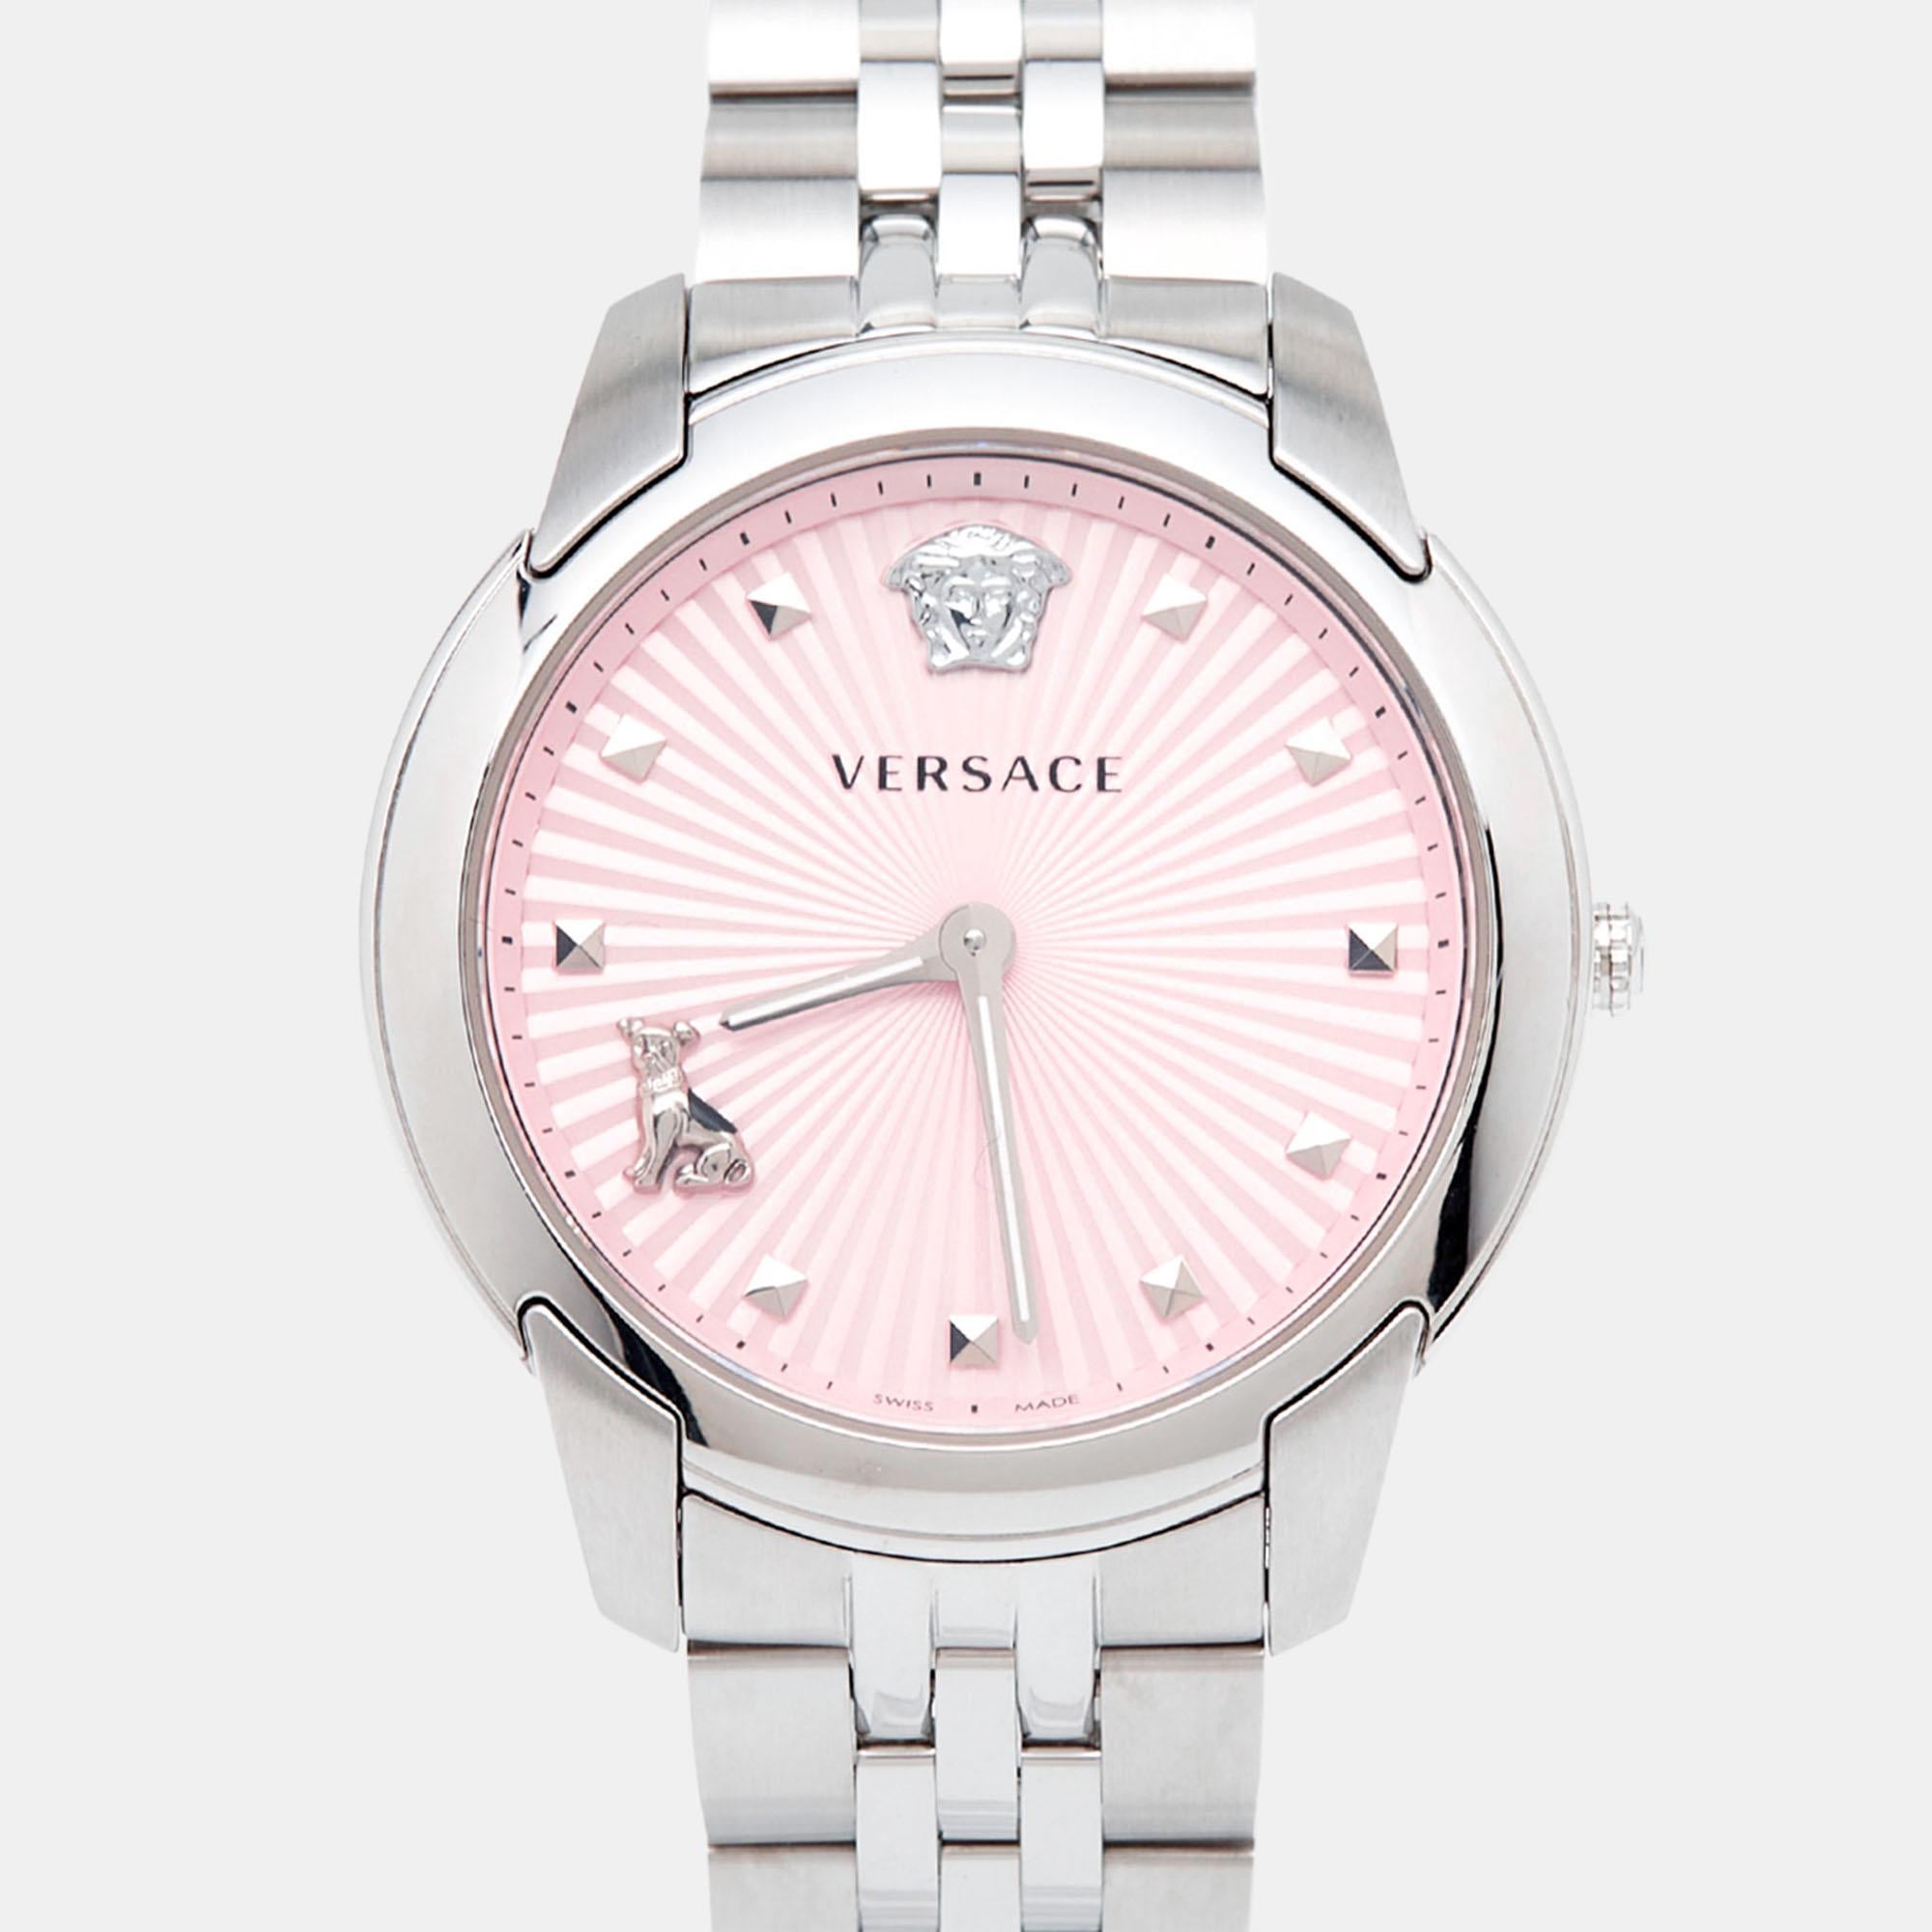 Erleben Sie die zeitlose Anziehungskraft der Versace Audrey VELR00419 Damenarmbanduhr. Dieser Zeitmesser verbindet mühelos Femininität mit Funktionalität und besticht durch sein markantes Edelstahldesign. Das schlichte rosafarbene Zifferblatt